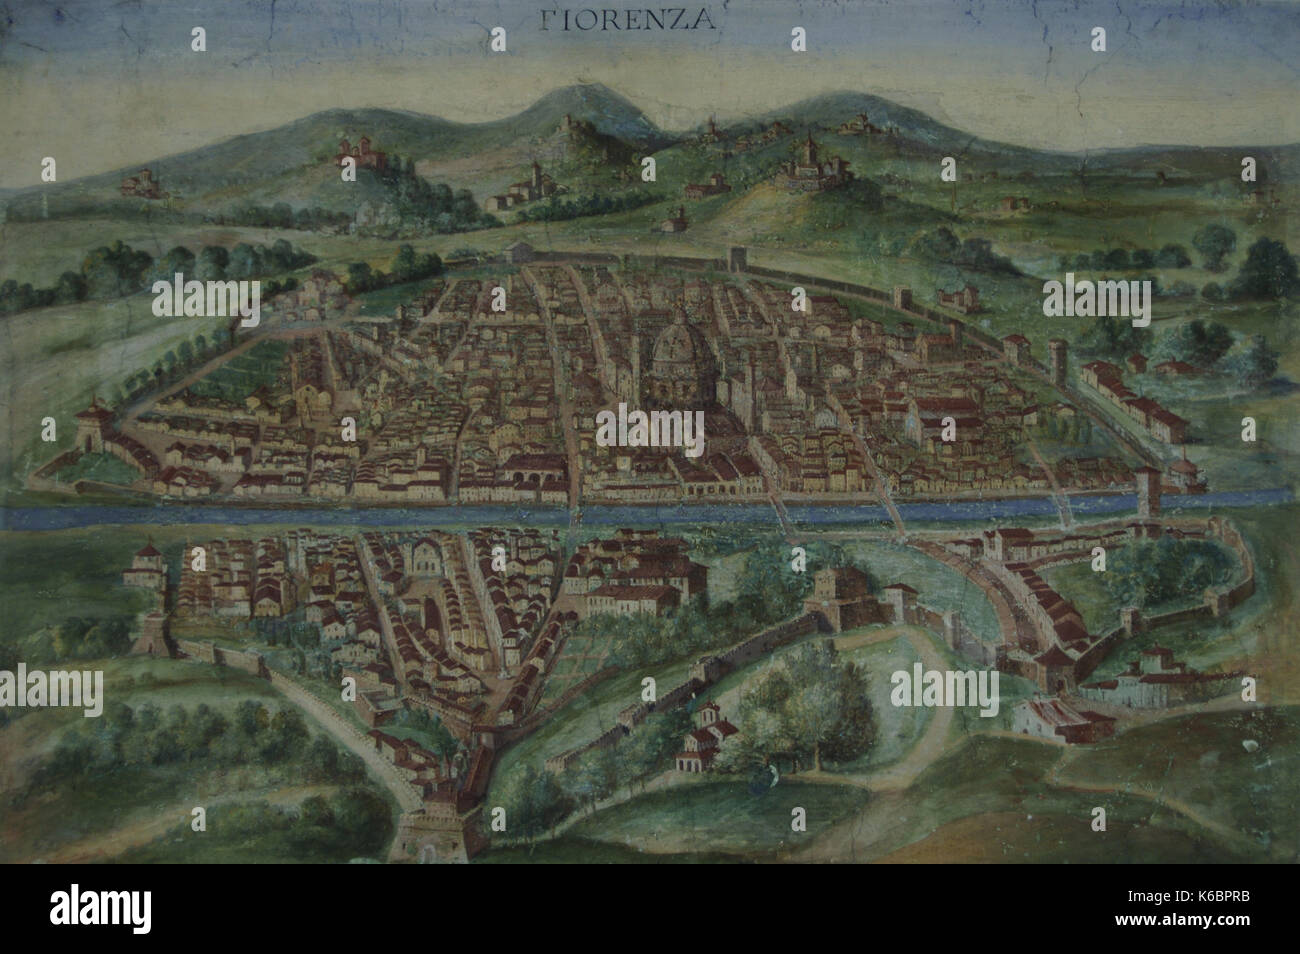 Italia. Florencia. Mapa de la ciudad en el siglo XVI. mapas galería. Museos vaticanos. Estado del Vaticano. Foto de stock